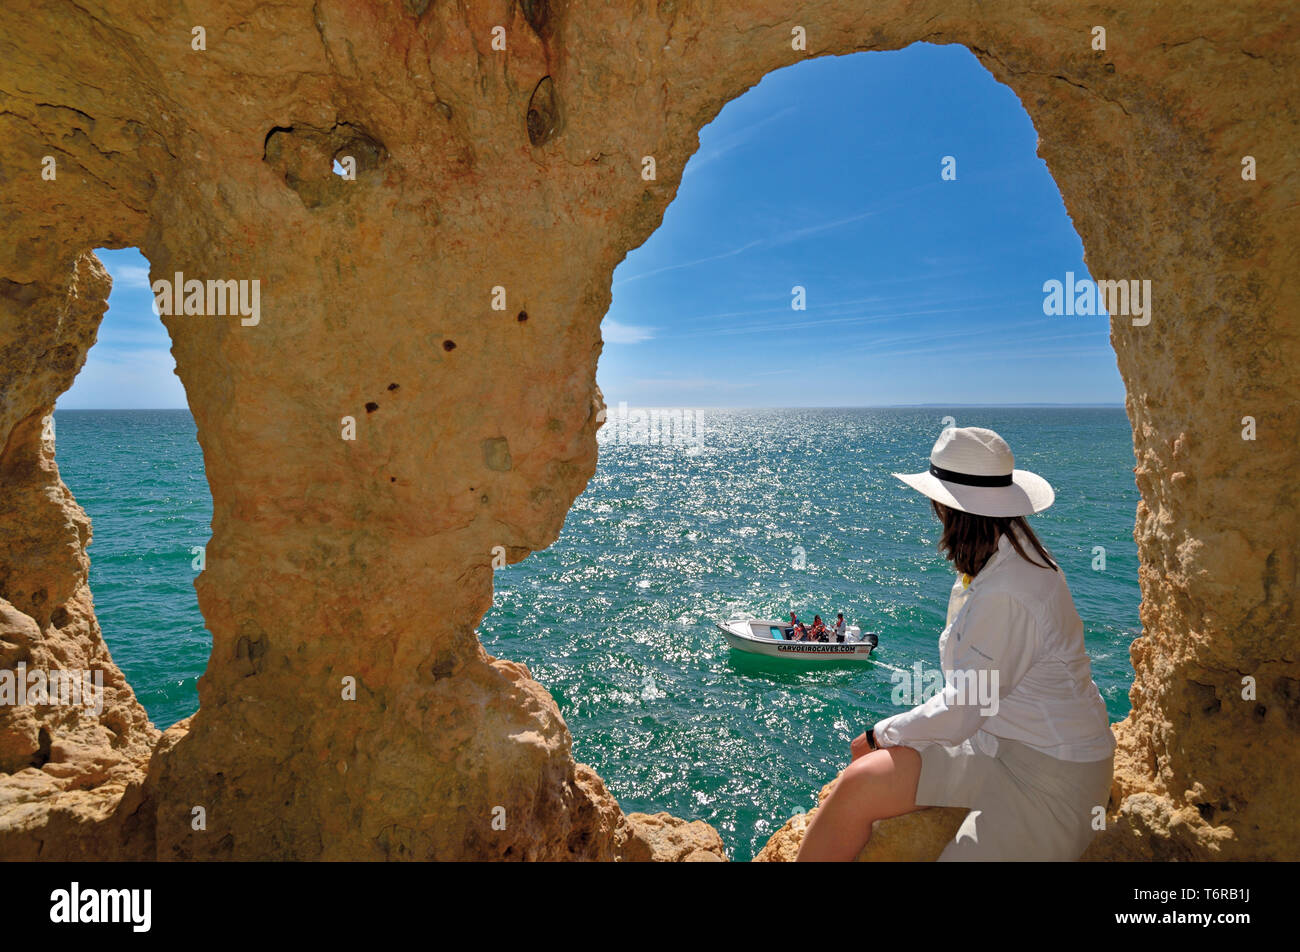 Donna che guarda dalla grotta naturale finestra oceano verde e passaggio di imbarcazione turistica in una giornata di sole Foto Stock